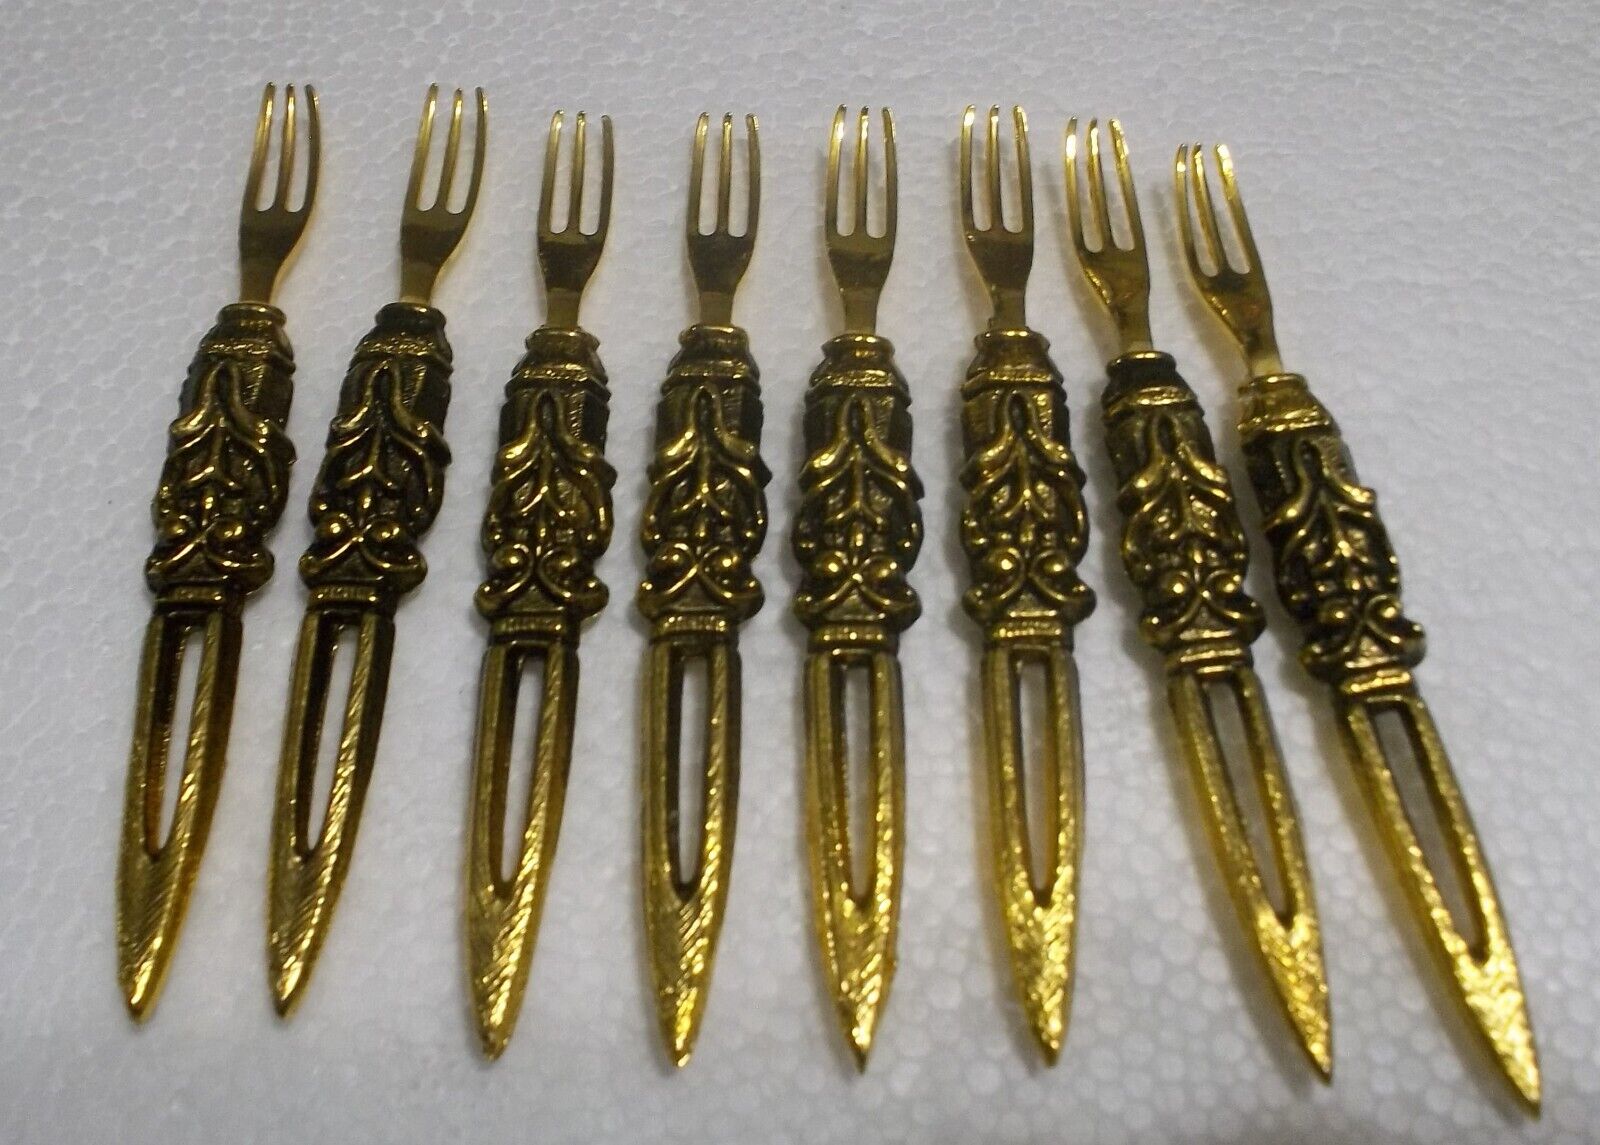 8 Delicacy Forks VINTAGE ORNATE GOLD TONE COCKTAIL FORKS